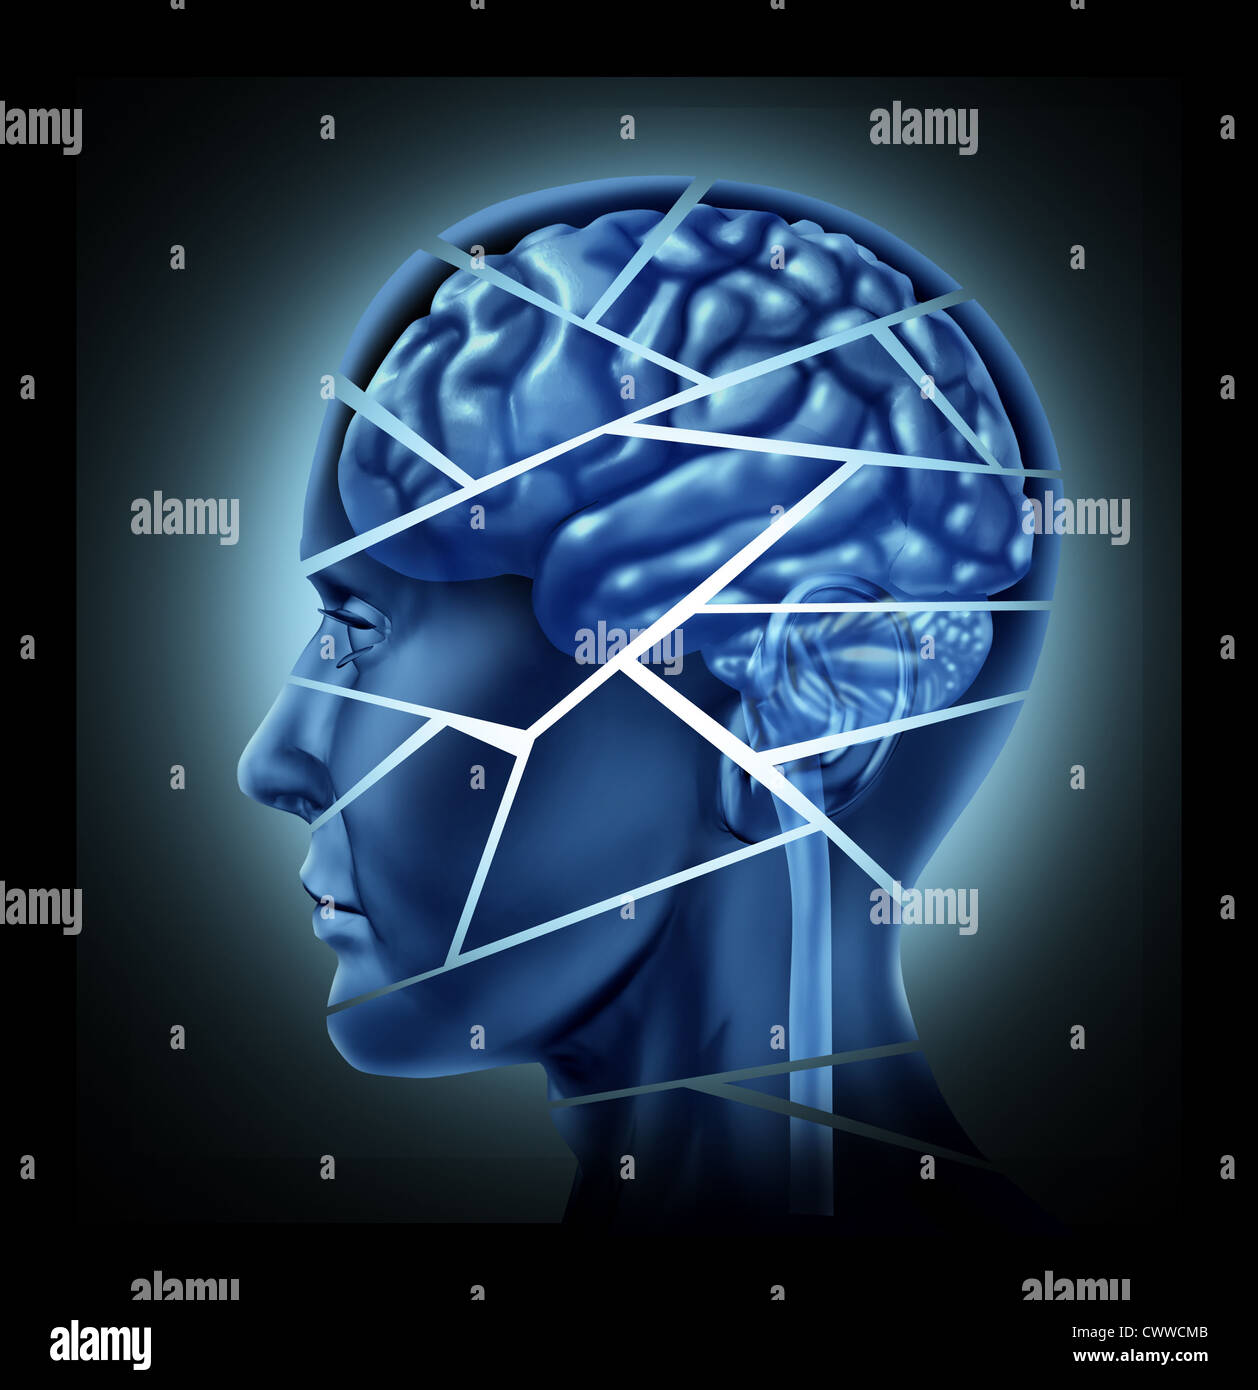 Hirn-Trauma und neurologische Störung, die durch einen menschlichen Kopf und Verstand in Stücke gebrochen, symbolisiert eine schwere medizinische psychisches Trauma und kognitive Krankheit dargestellt. Stockfoto